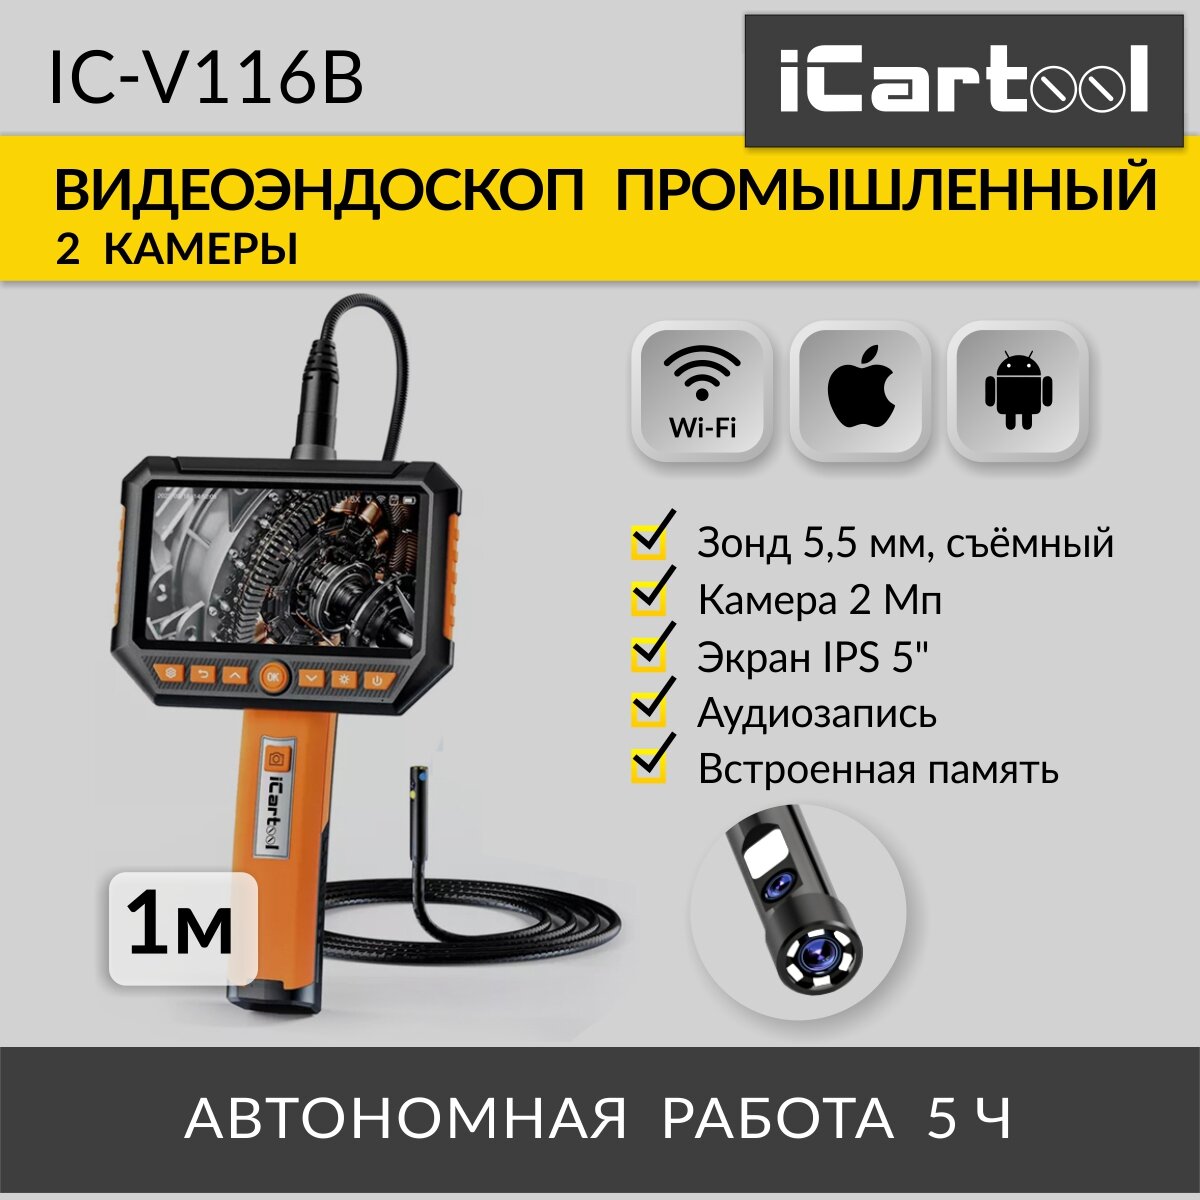 Видеоэндоскоп промышленный, экран 5", 2 камеры, 2Мп, 1920х1080, 1м, 5.5 мм сменный зонд iCartool IC-V116B